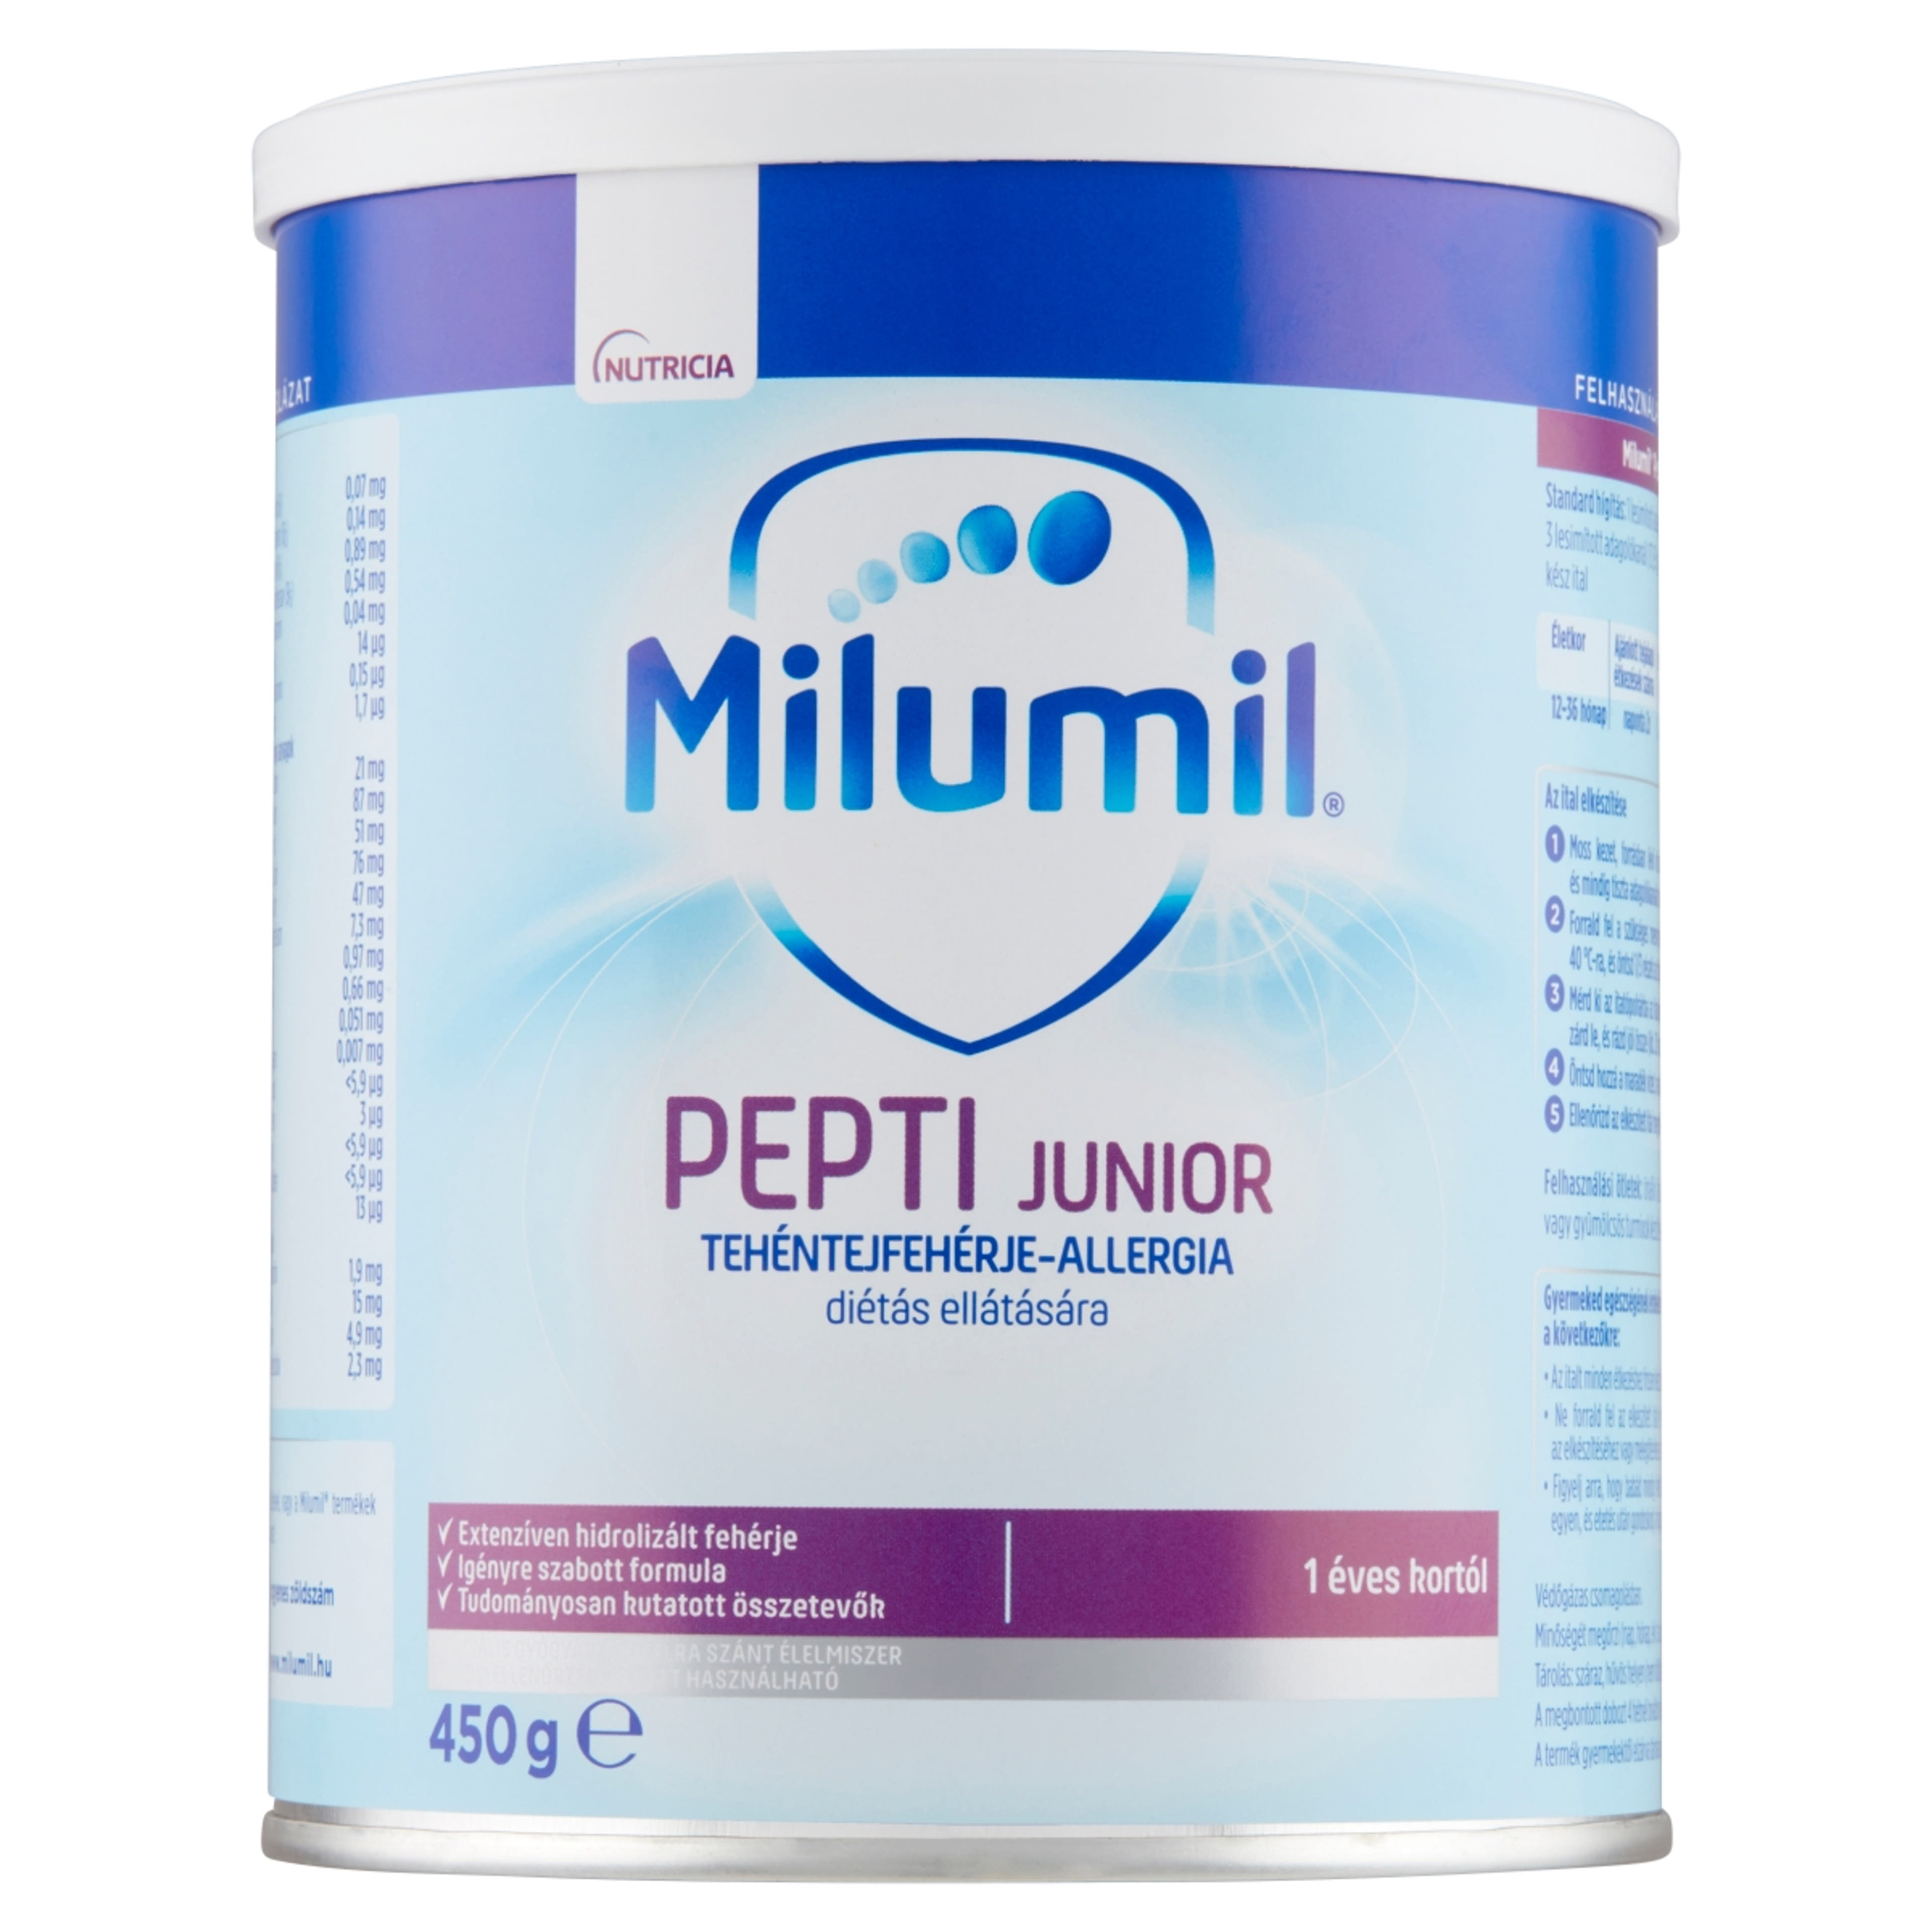 Milumil Pepti Junior speciális gyógyászati célra szánt élelmiszer 1 éves kortól - 450 g